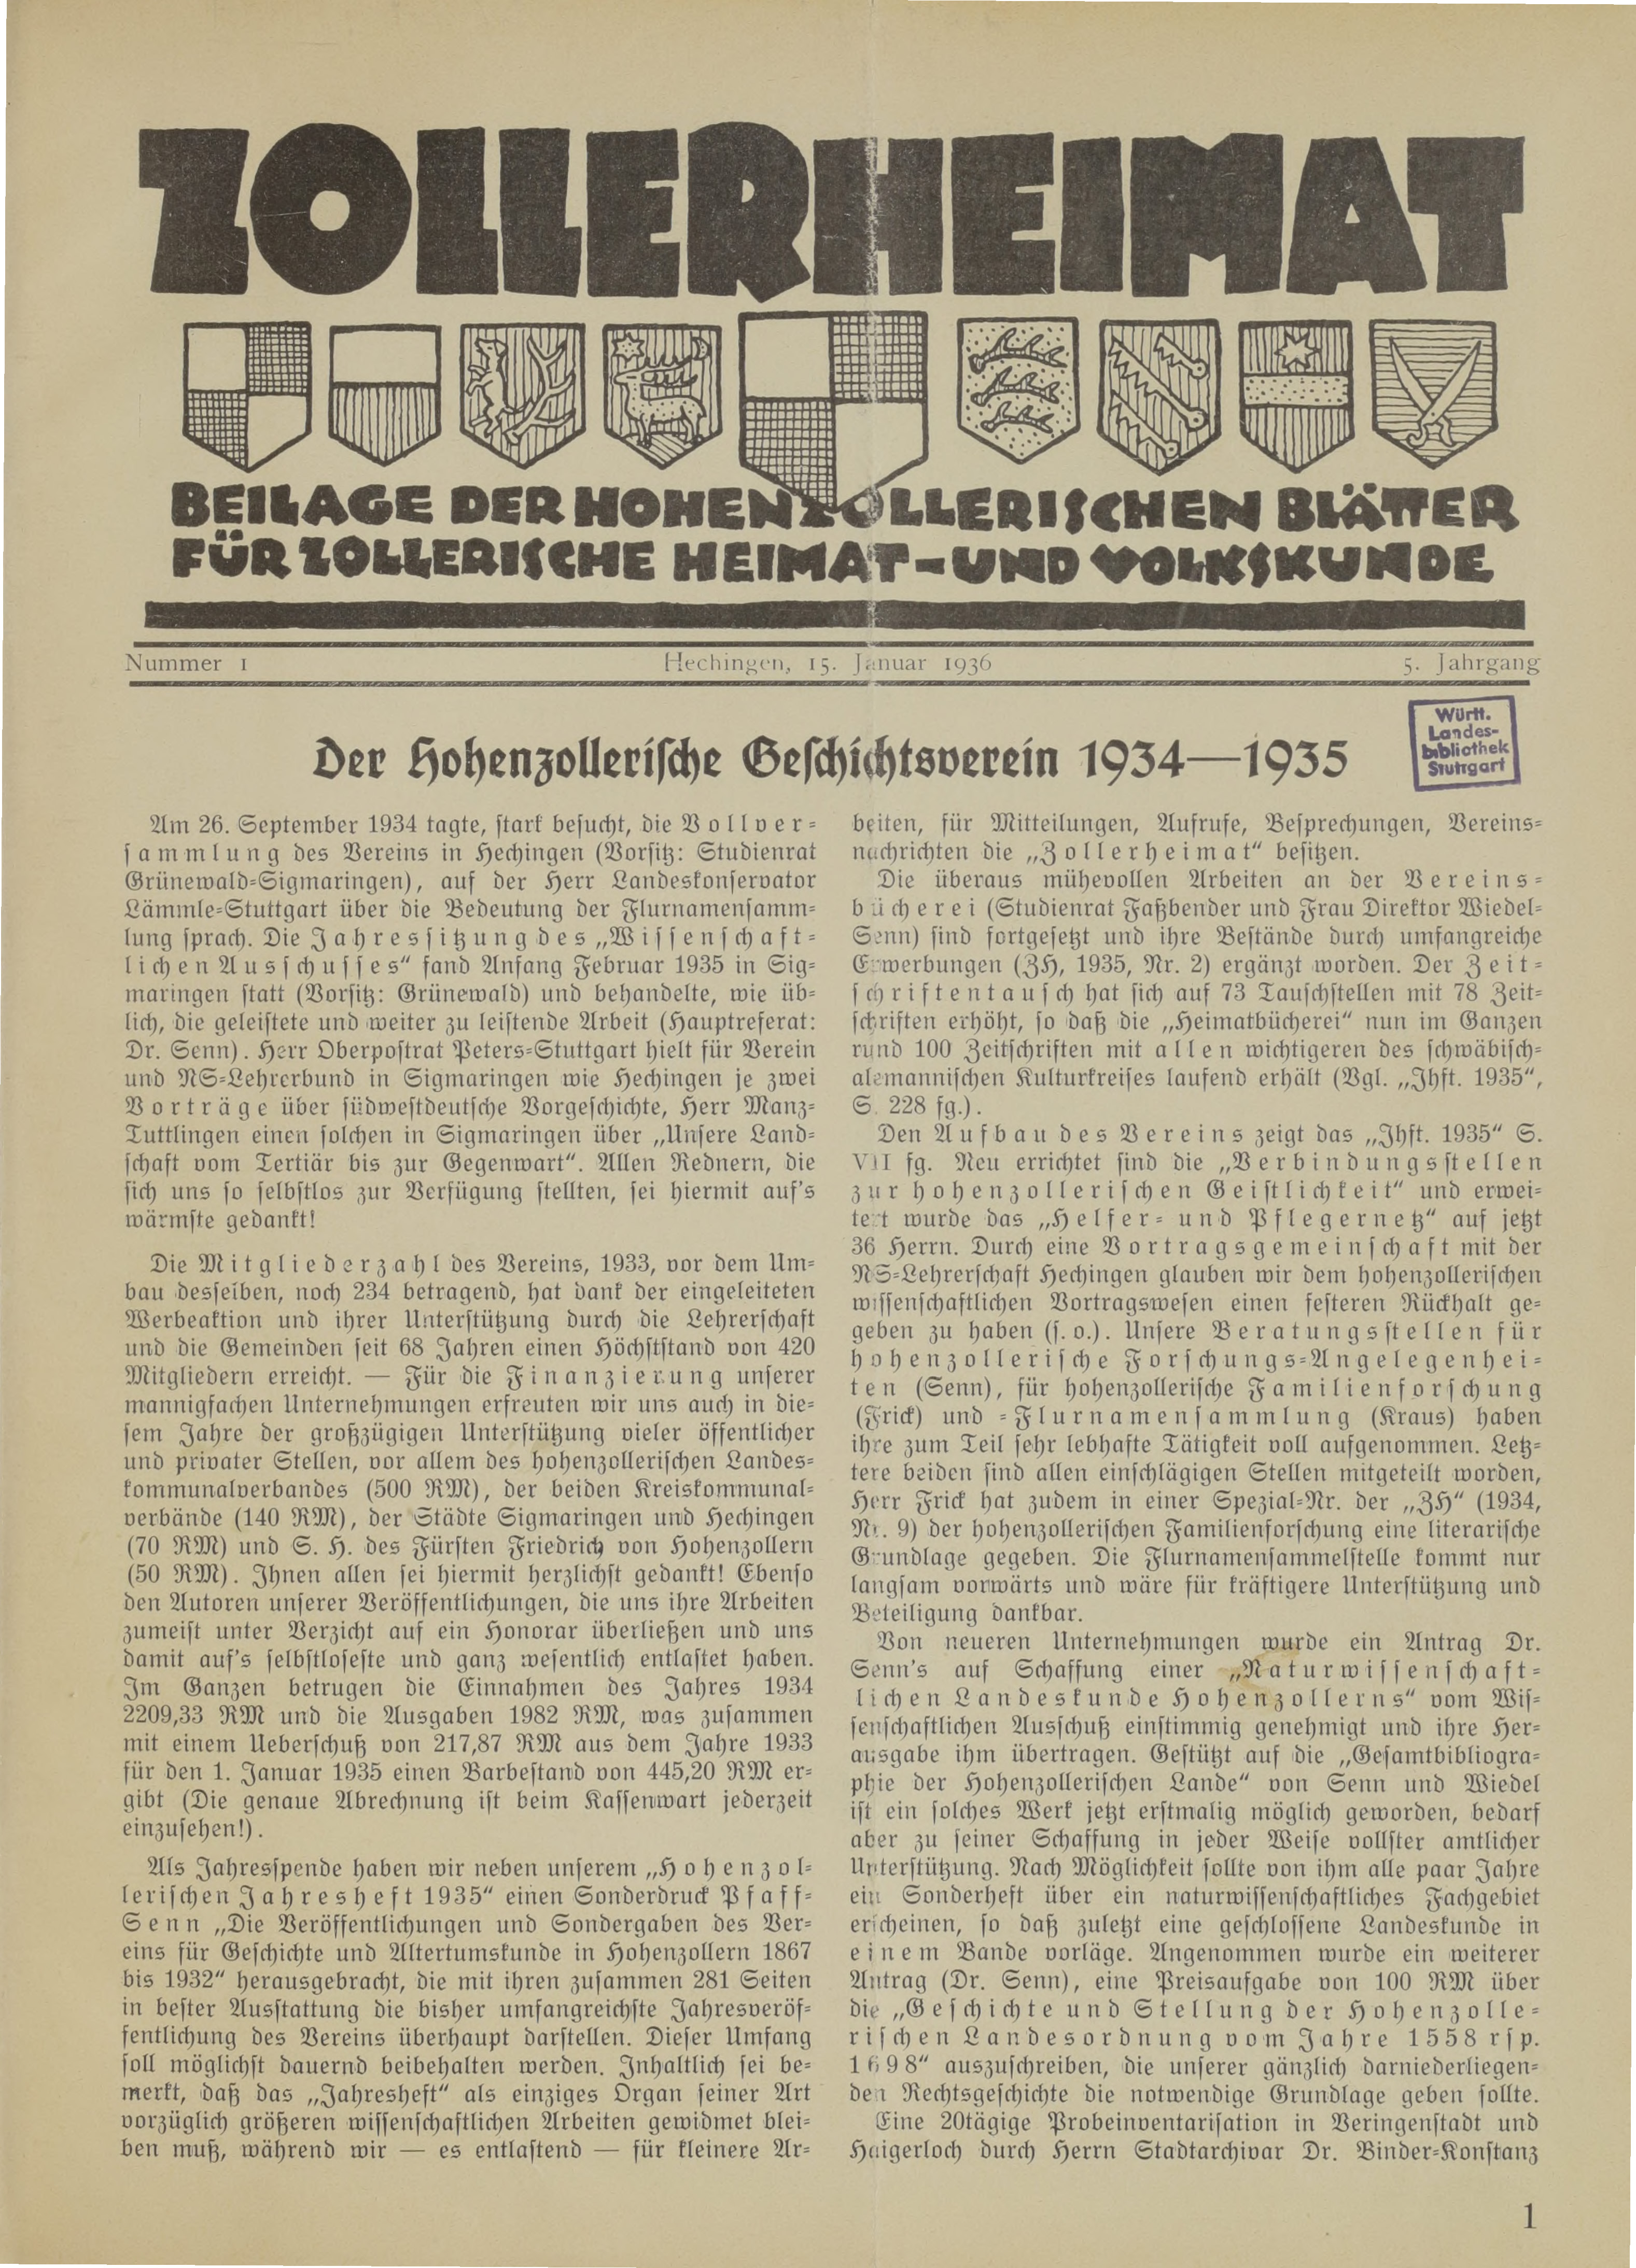                     Ansehen Bd. 5 Nr. 1 (1936): Zollerheimat
                